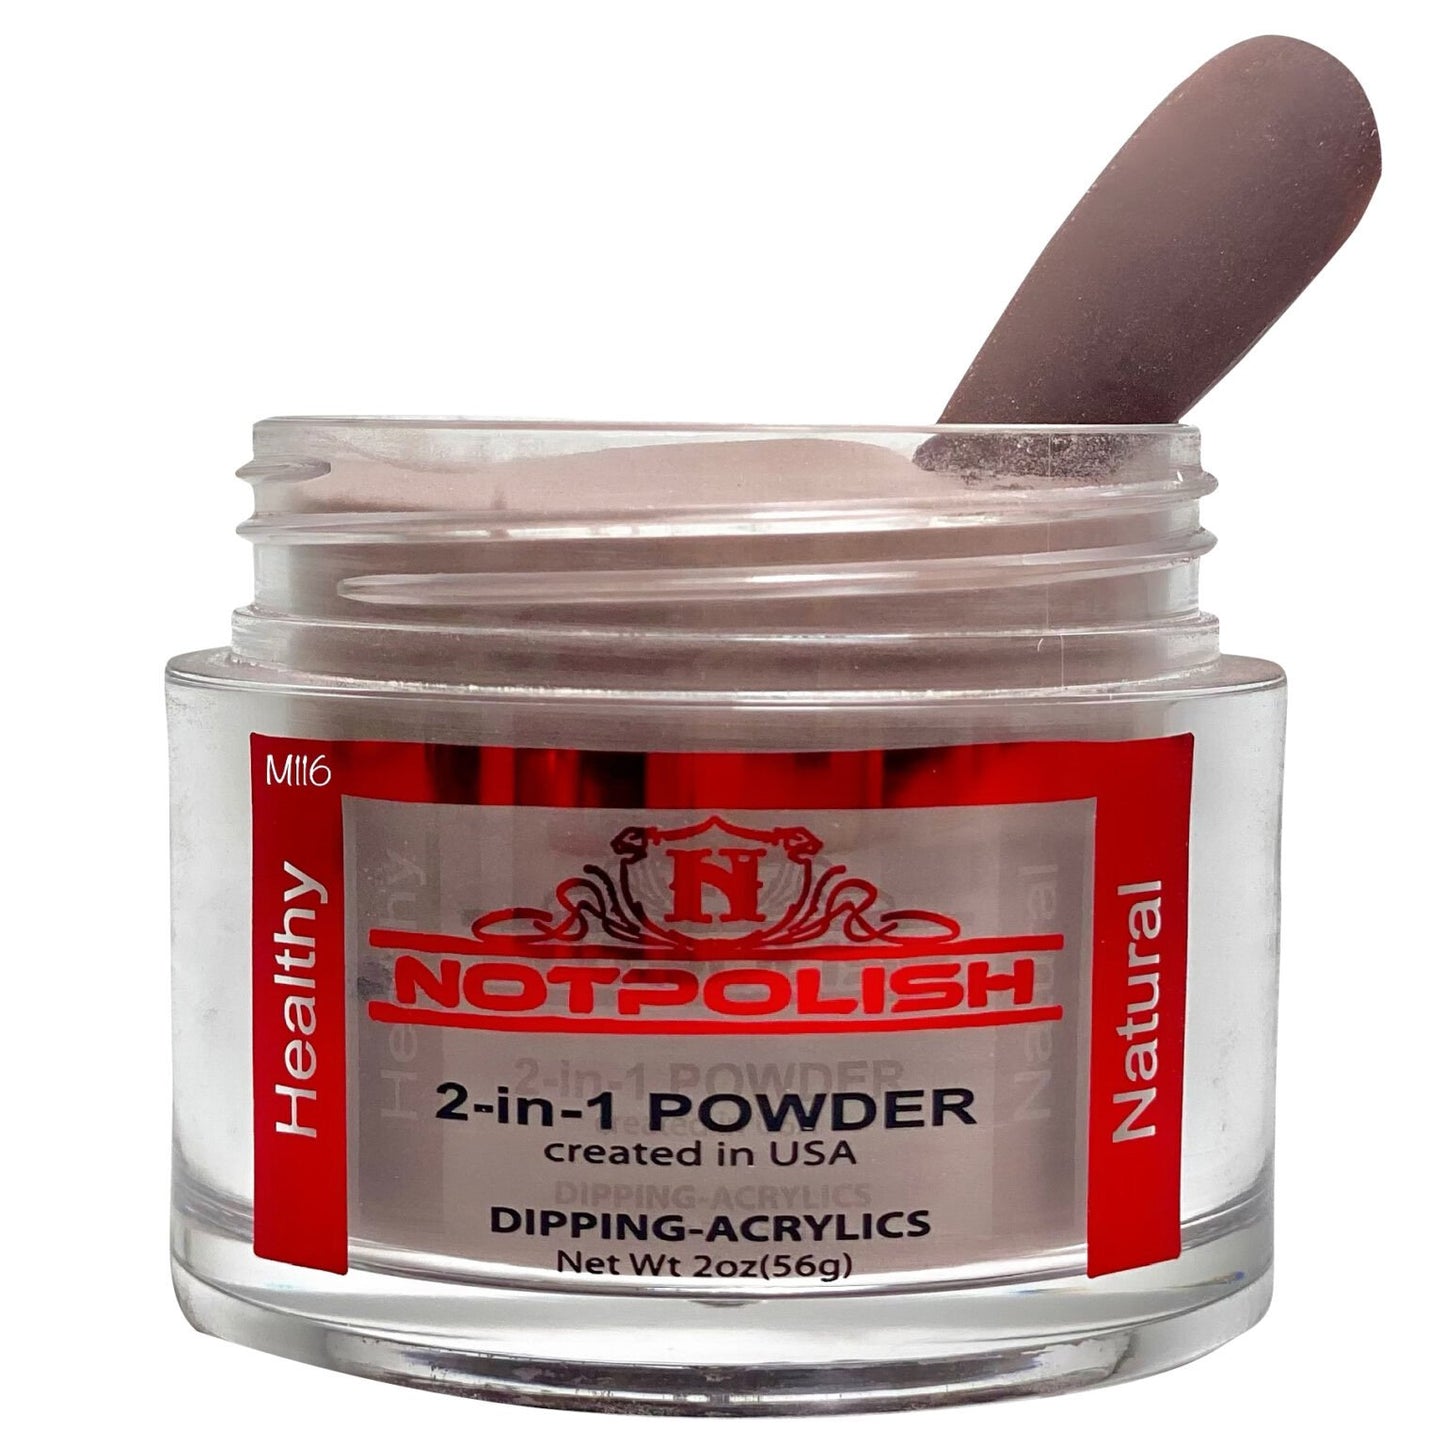 Notpolish Matching Powder M116 - Chocolate Thunder